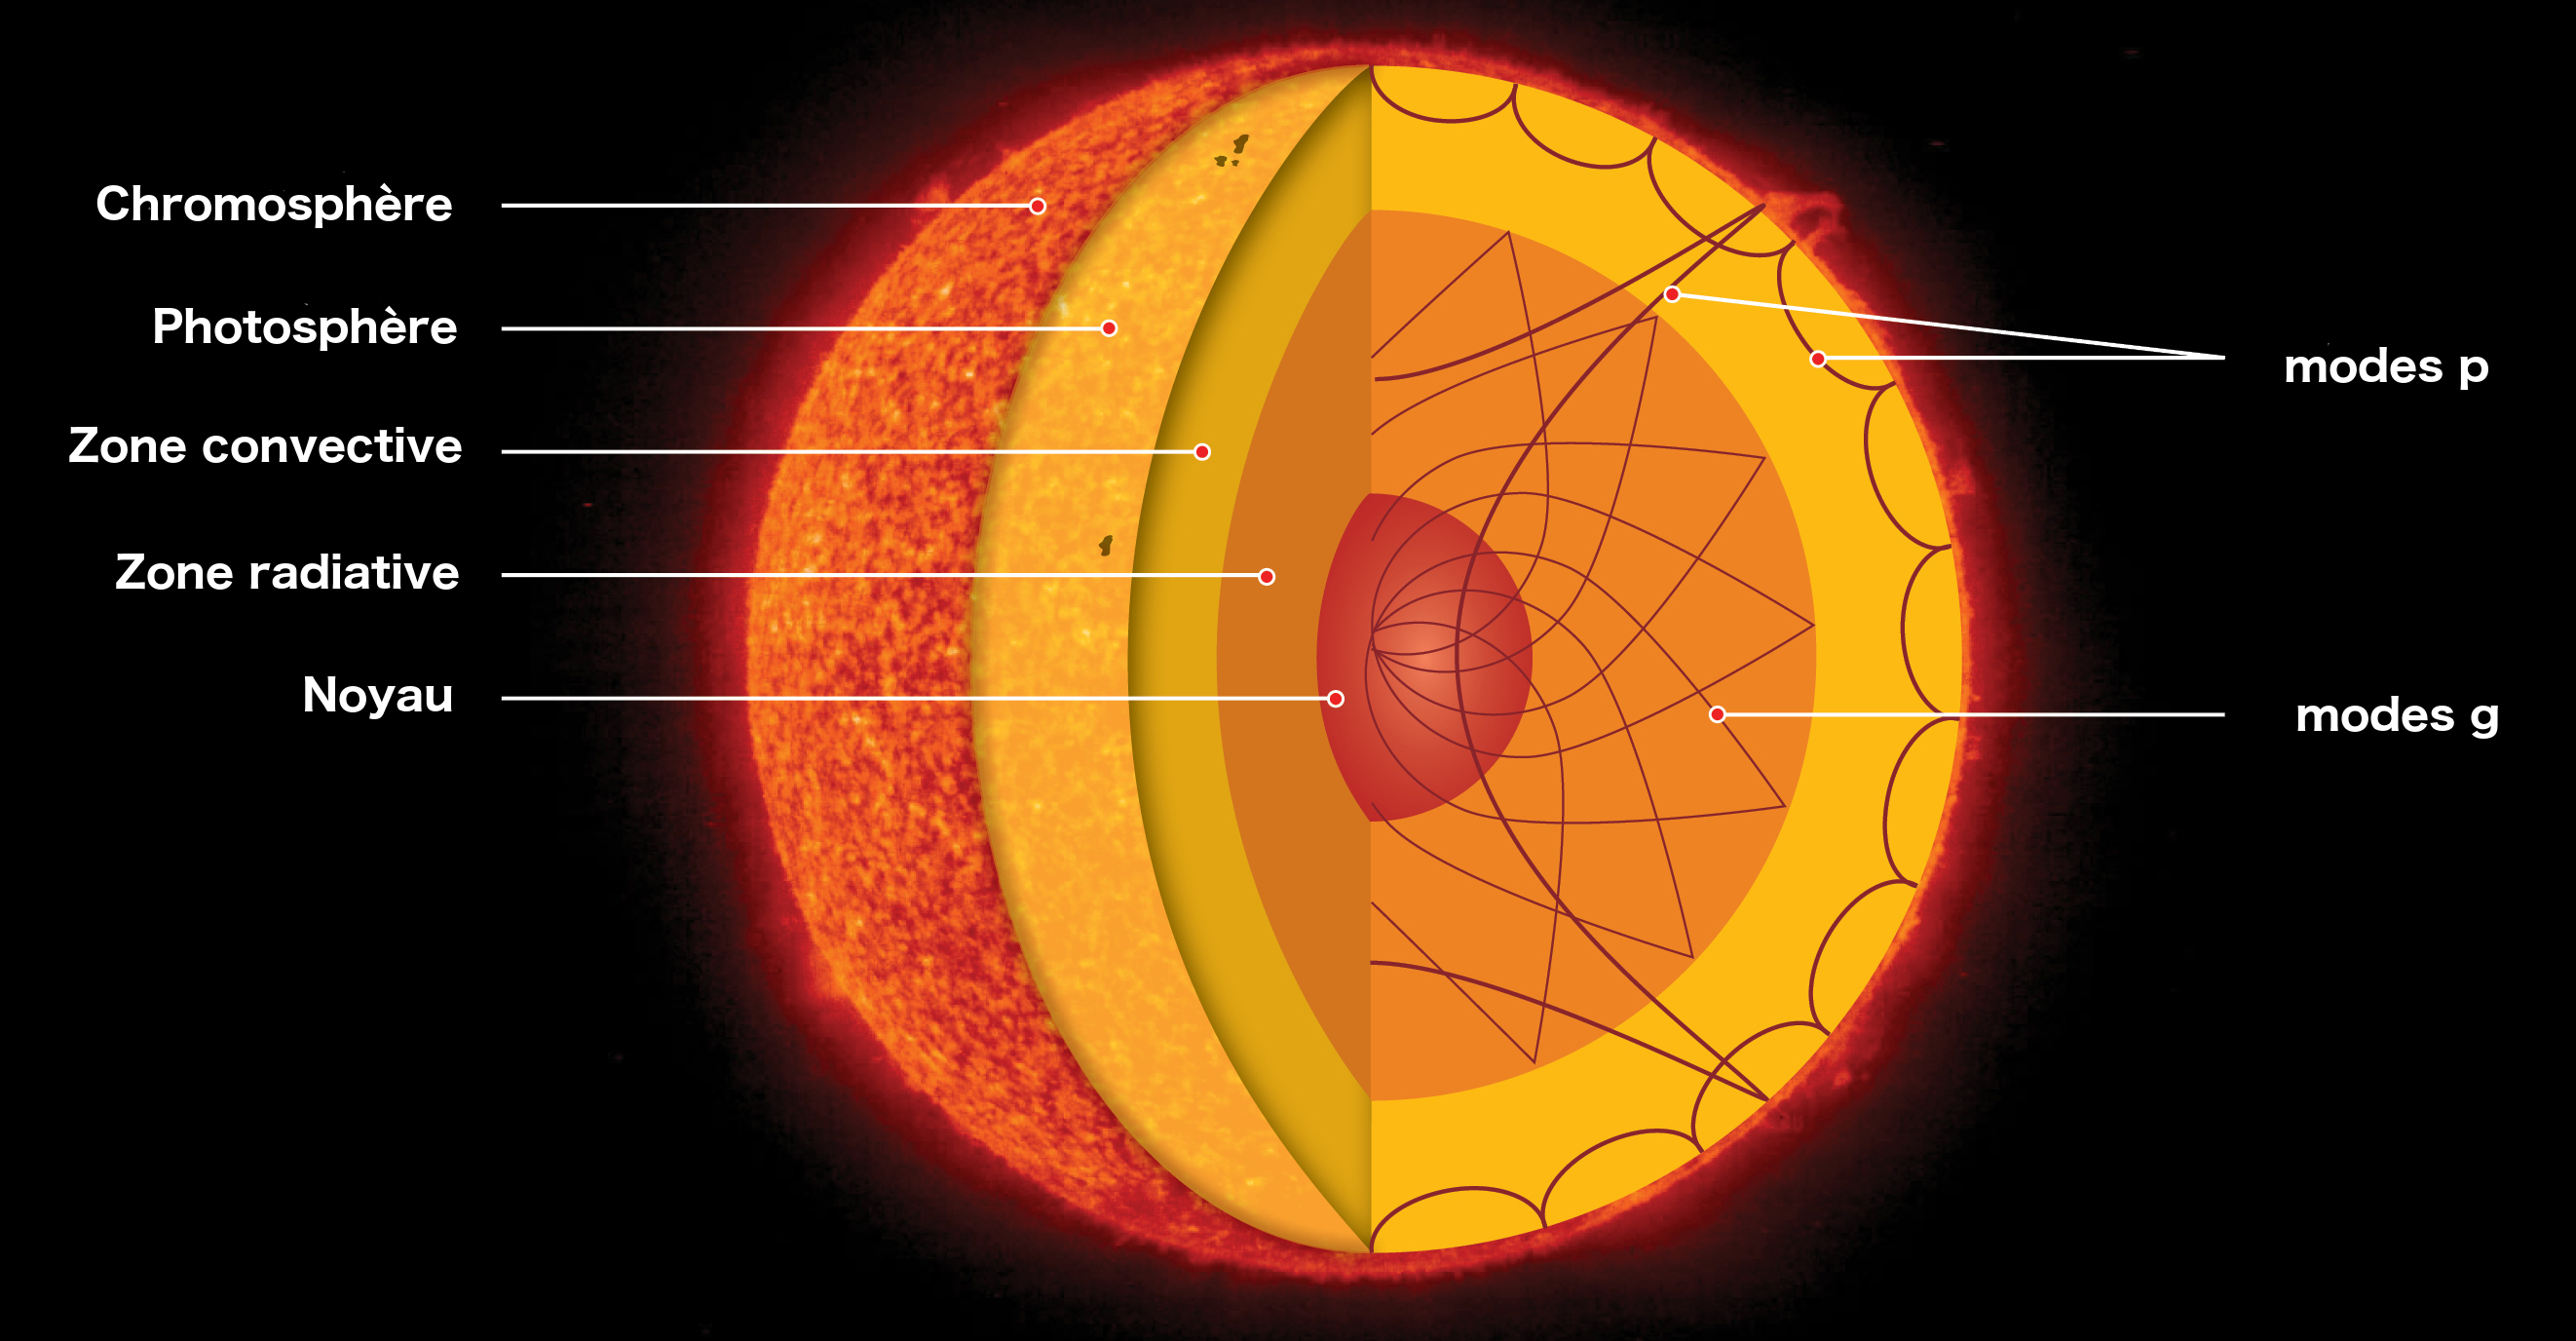 Interieur solaire modes g